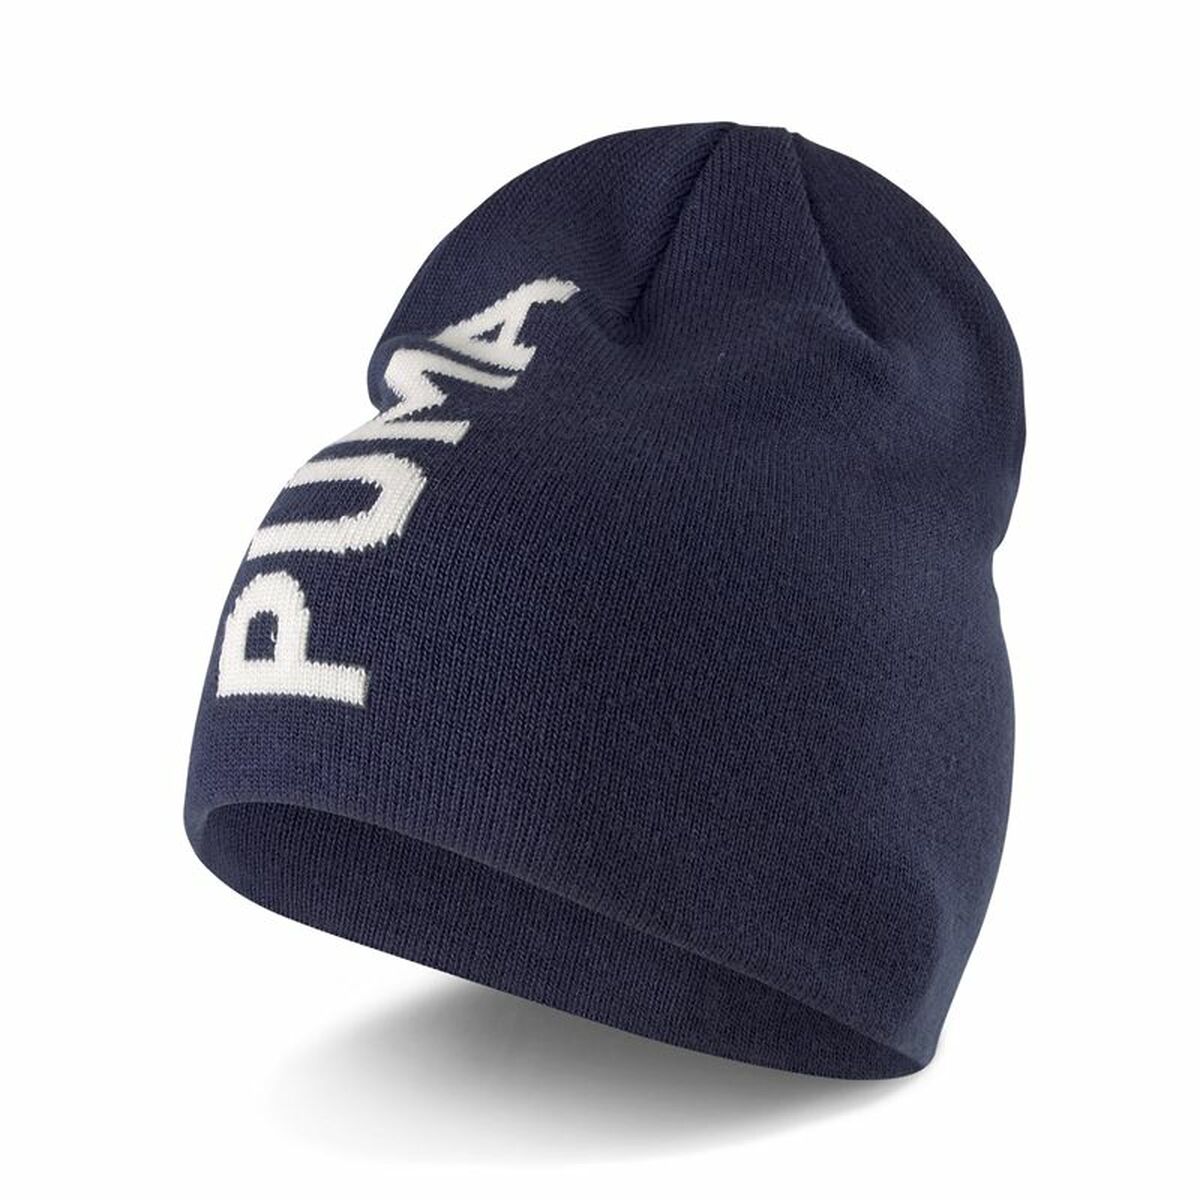 Pălărie Puma Essential Classic Cuffless Albastru Mărime unică